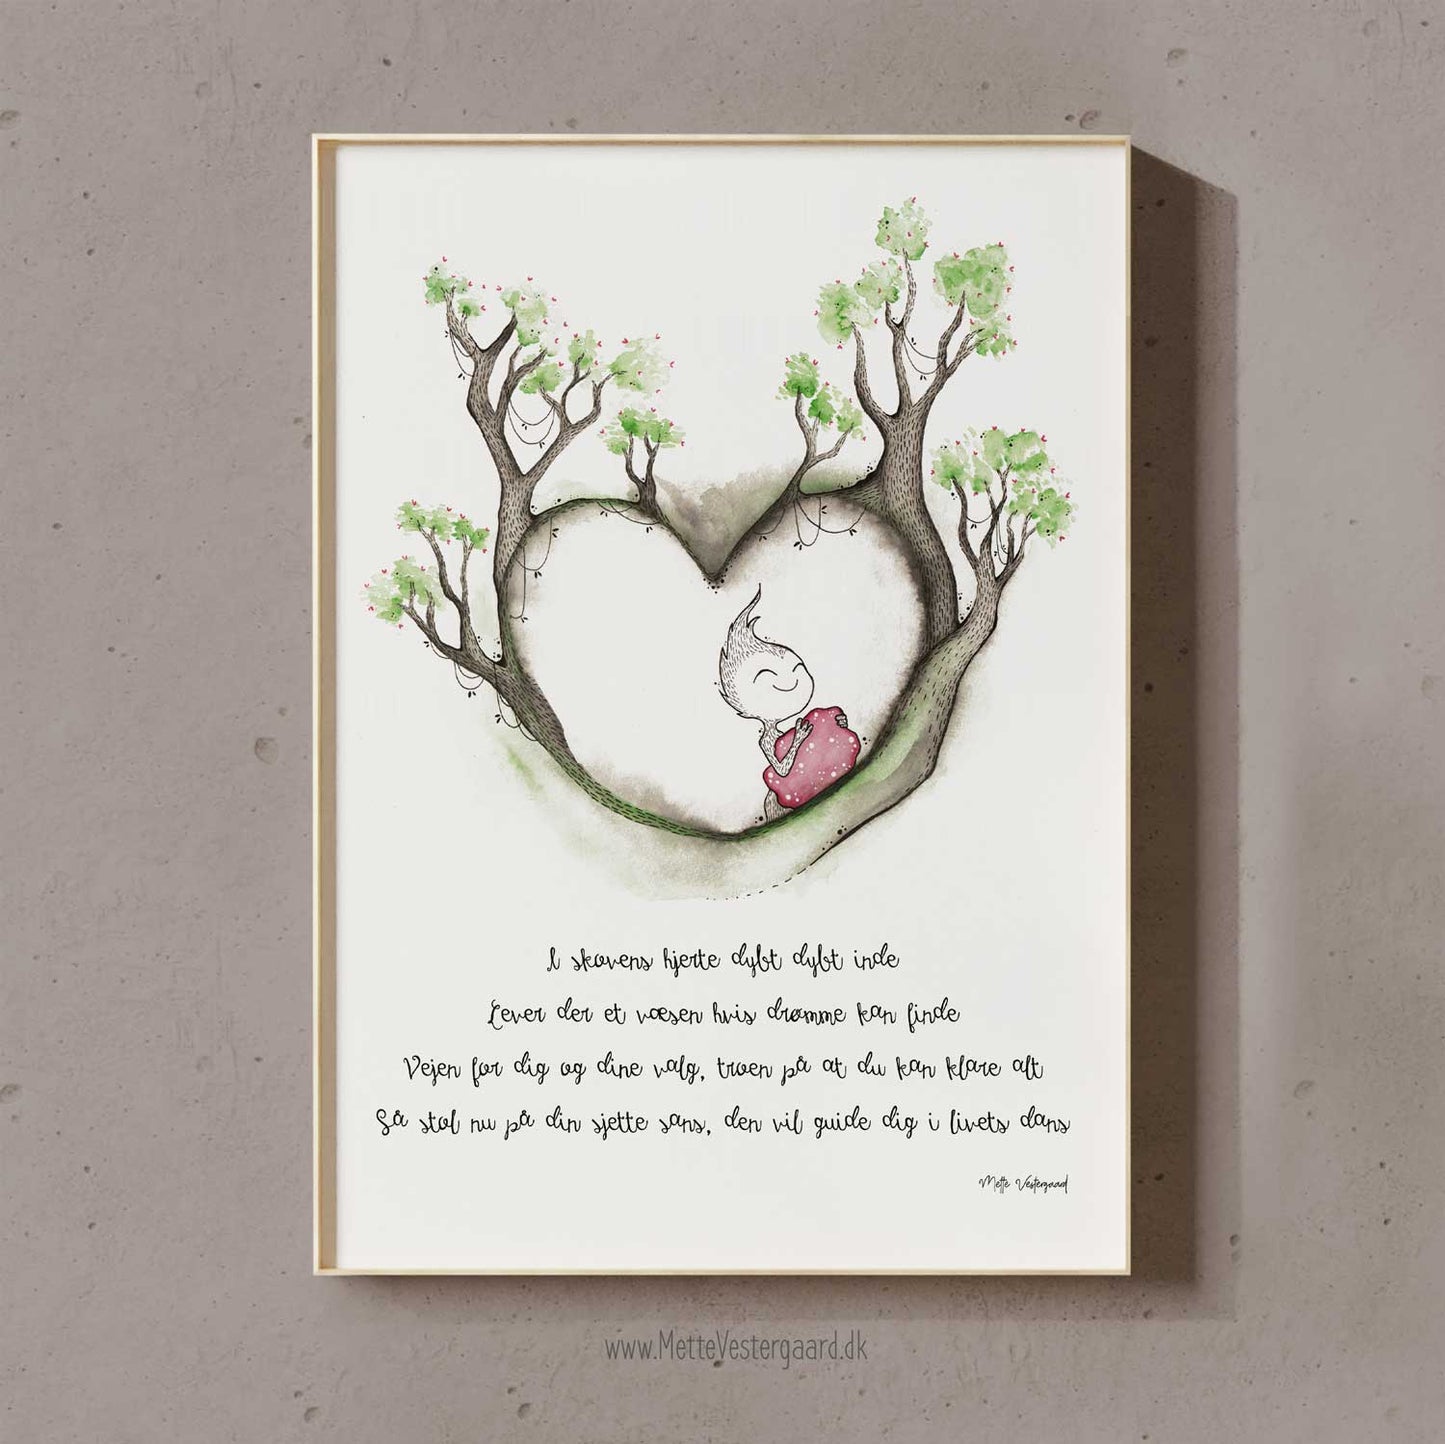 Illustration med et lille væsen der holder en rødlig klump der skal symbolisere drømme. Rundt om det lille væsen er der grene og træer der former et hjerte. Nedenunder illustrationen står der et vers der handler om at lytte til sit hjerte og følge sine drømme.